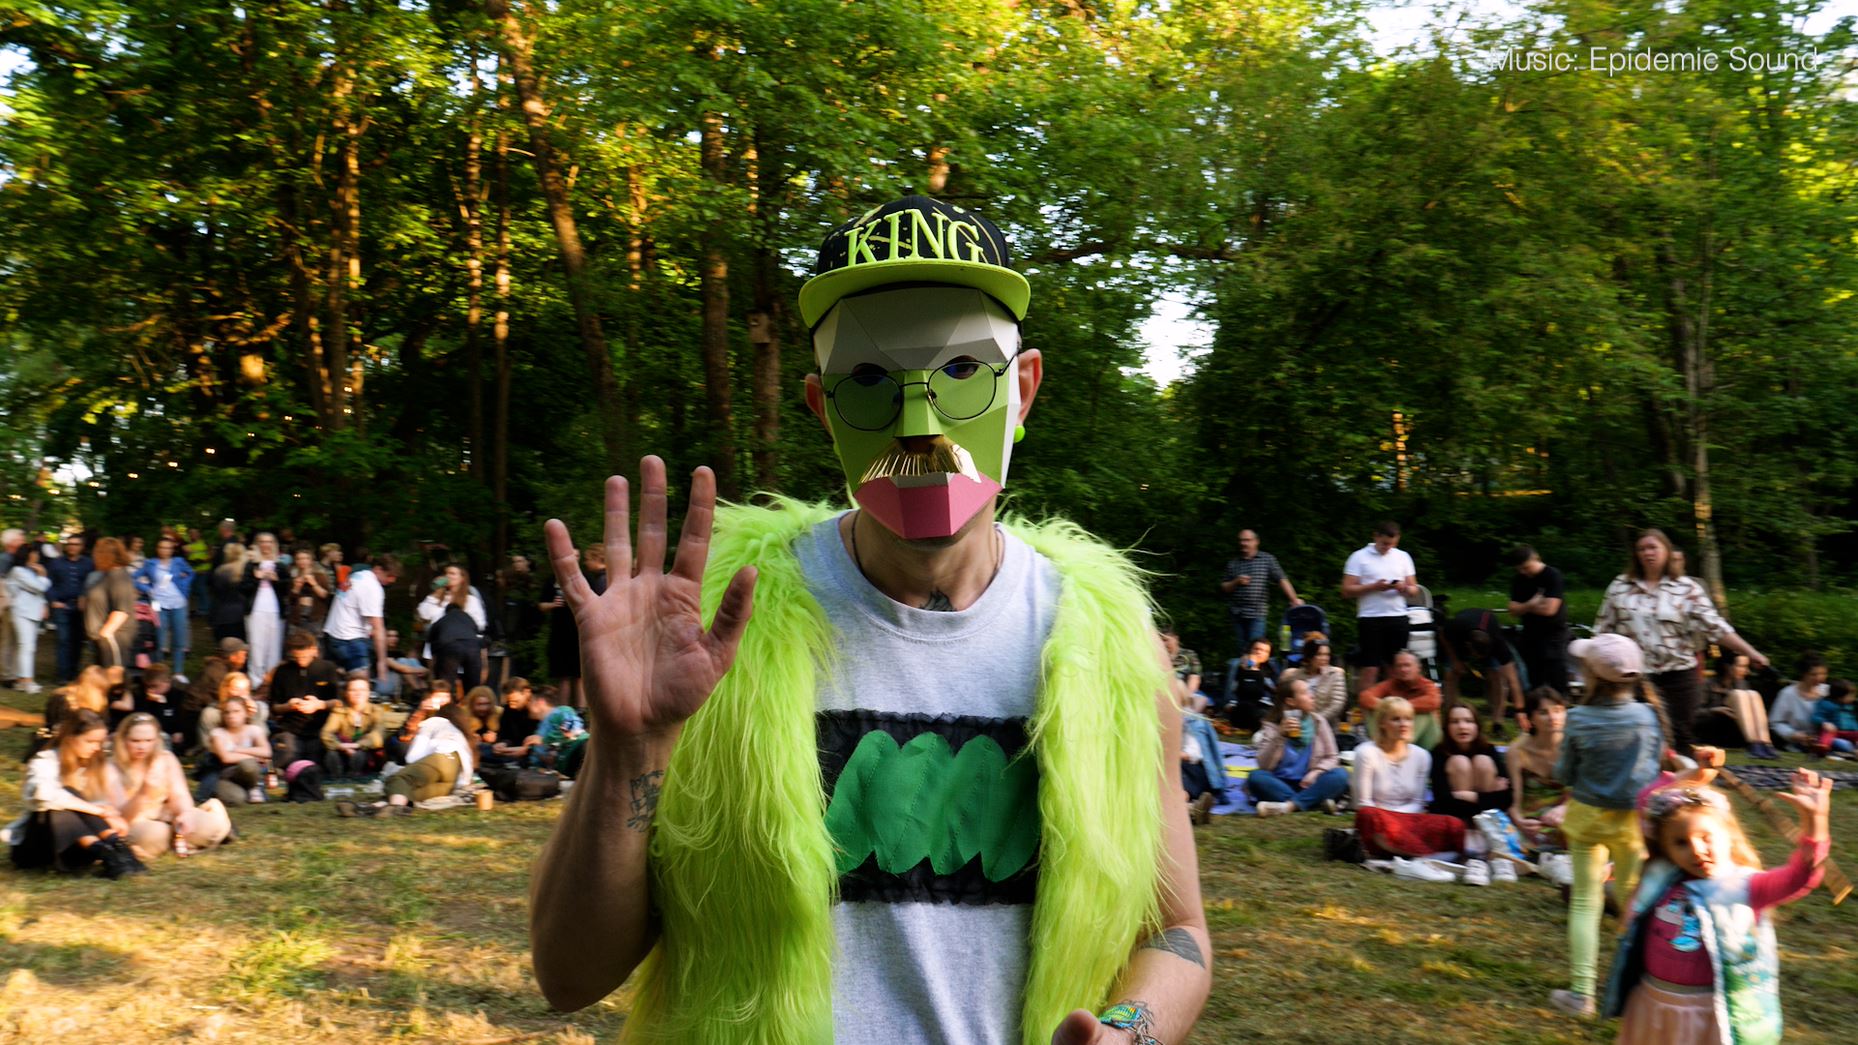 En mann med fargerik maske og grønn fuskepelsvest, meg sort og grønn caps hvor det står "King", som vinker til kameraet. Andre publlikummere i bakgrunnen som sitter eller står på plenen.